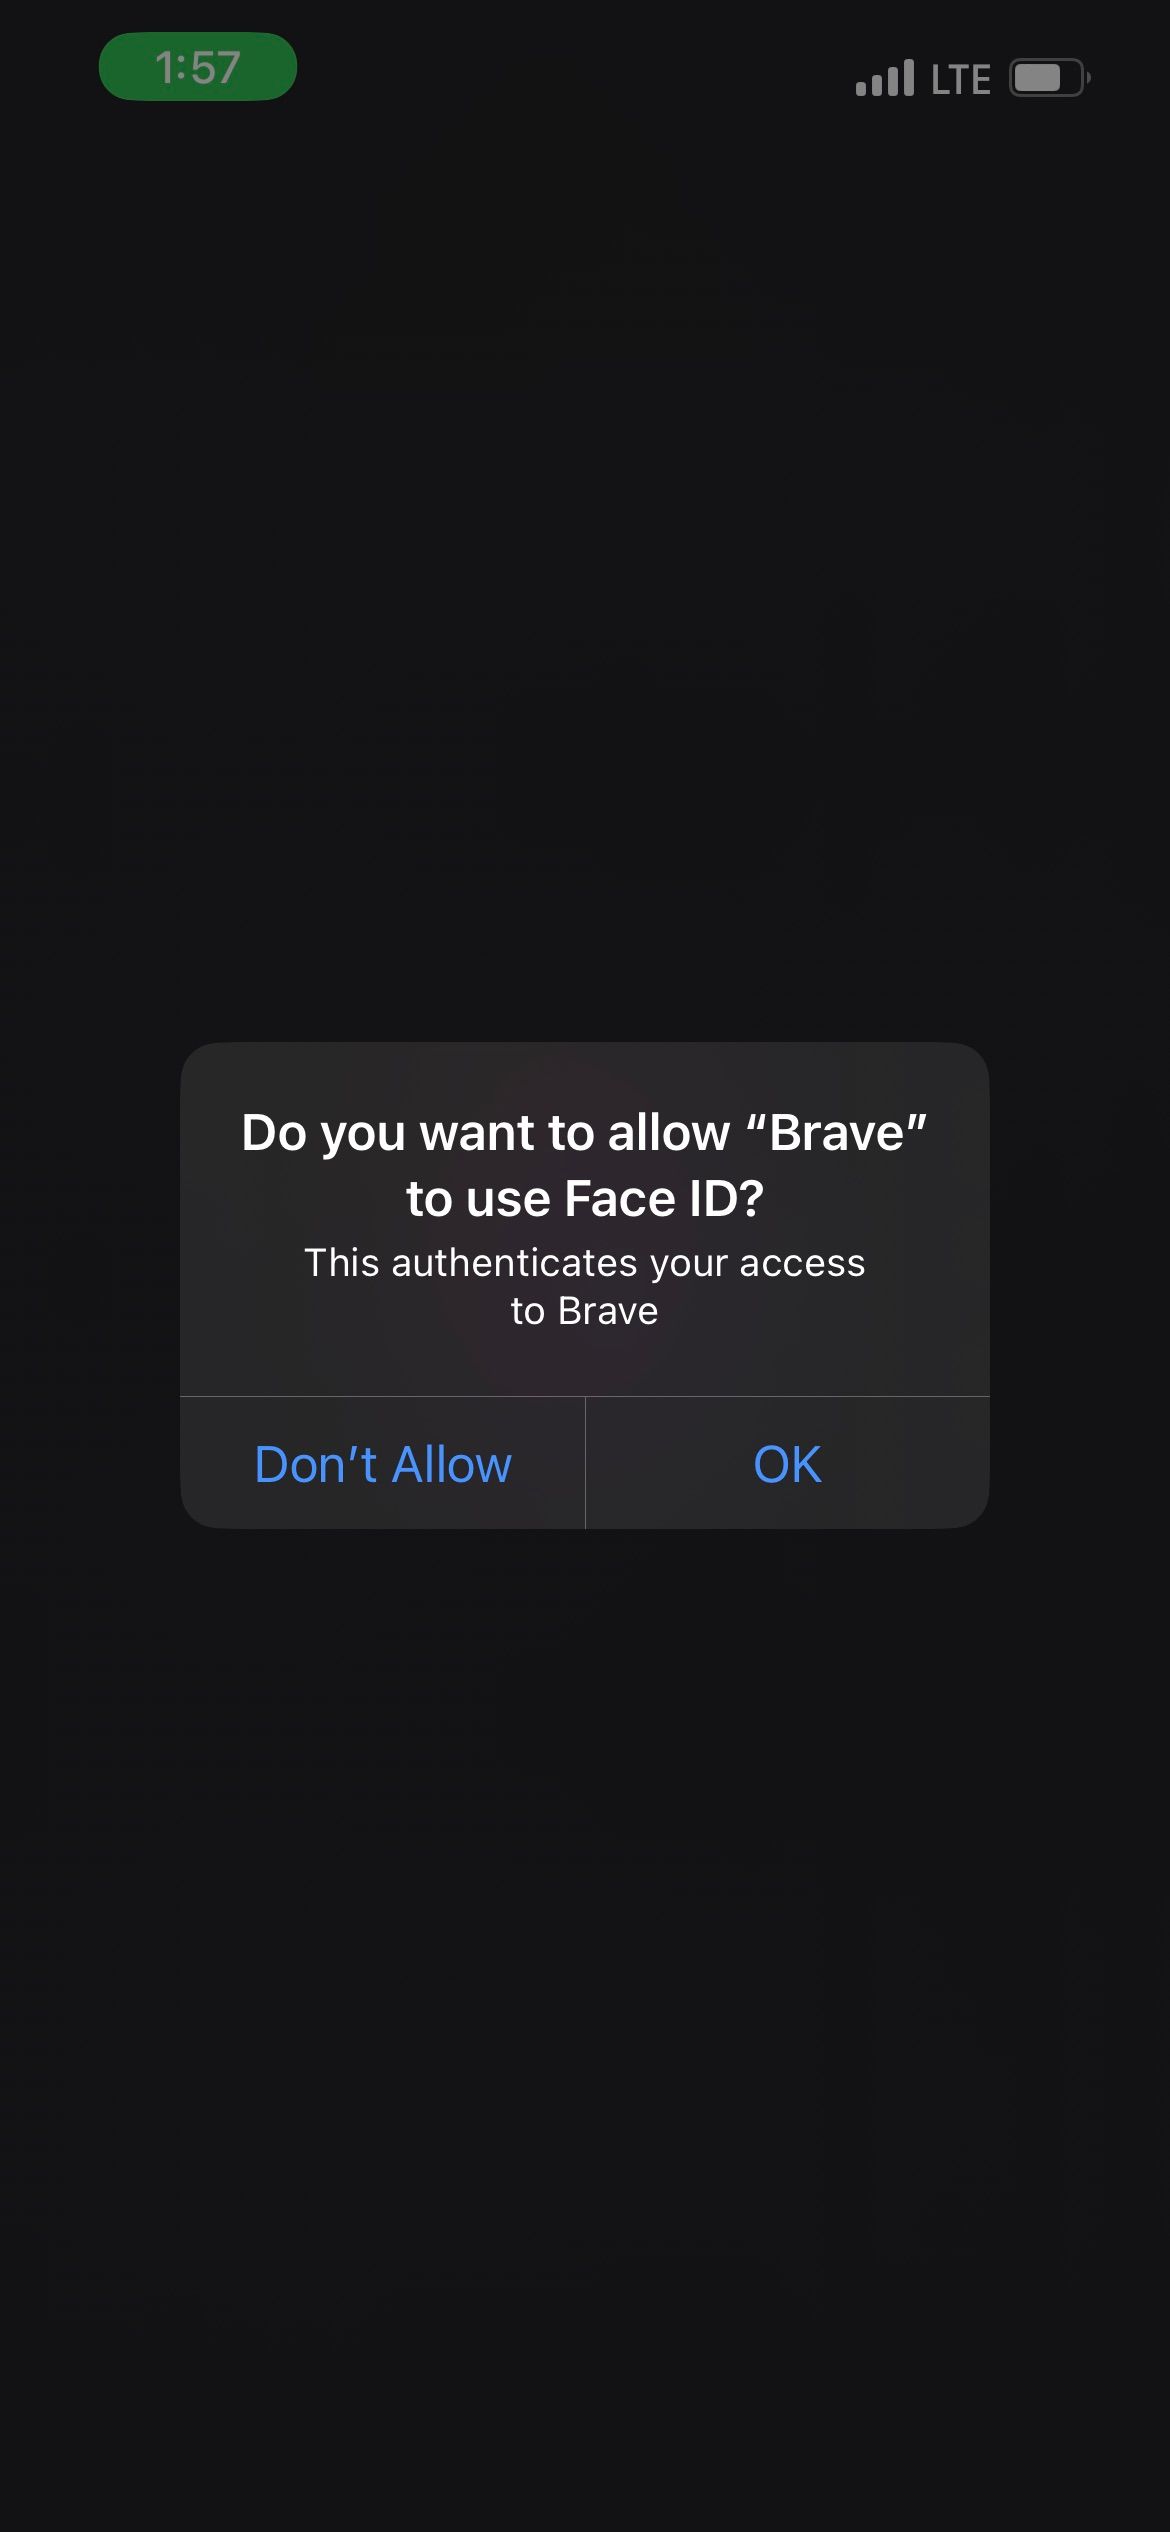 مرورگر Brave برای احراز هویت به Face ID نیاز دارد